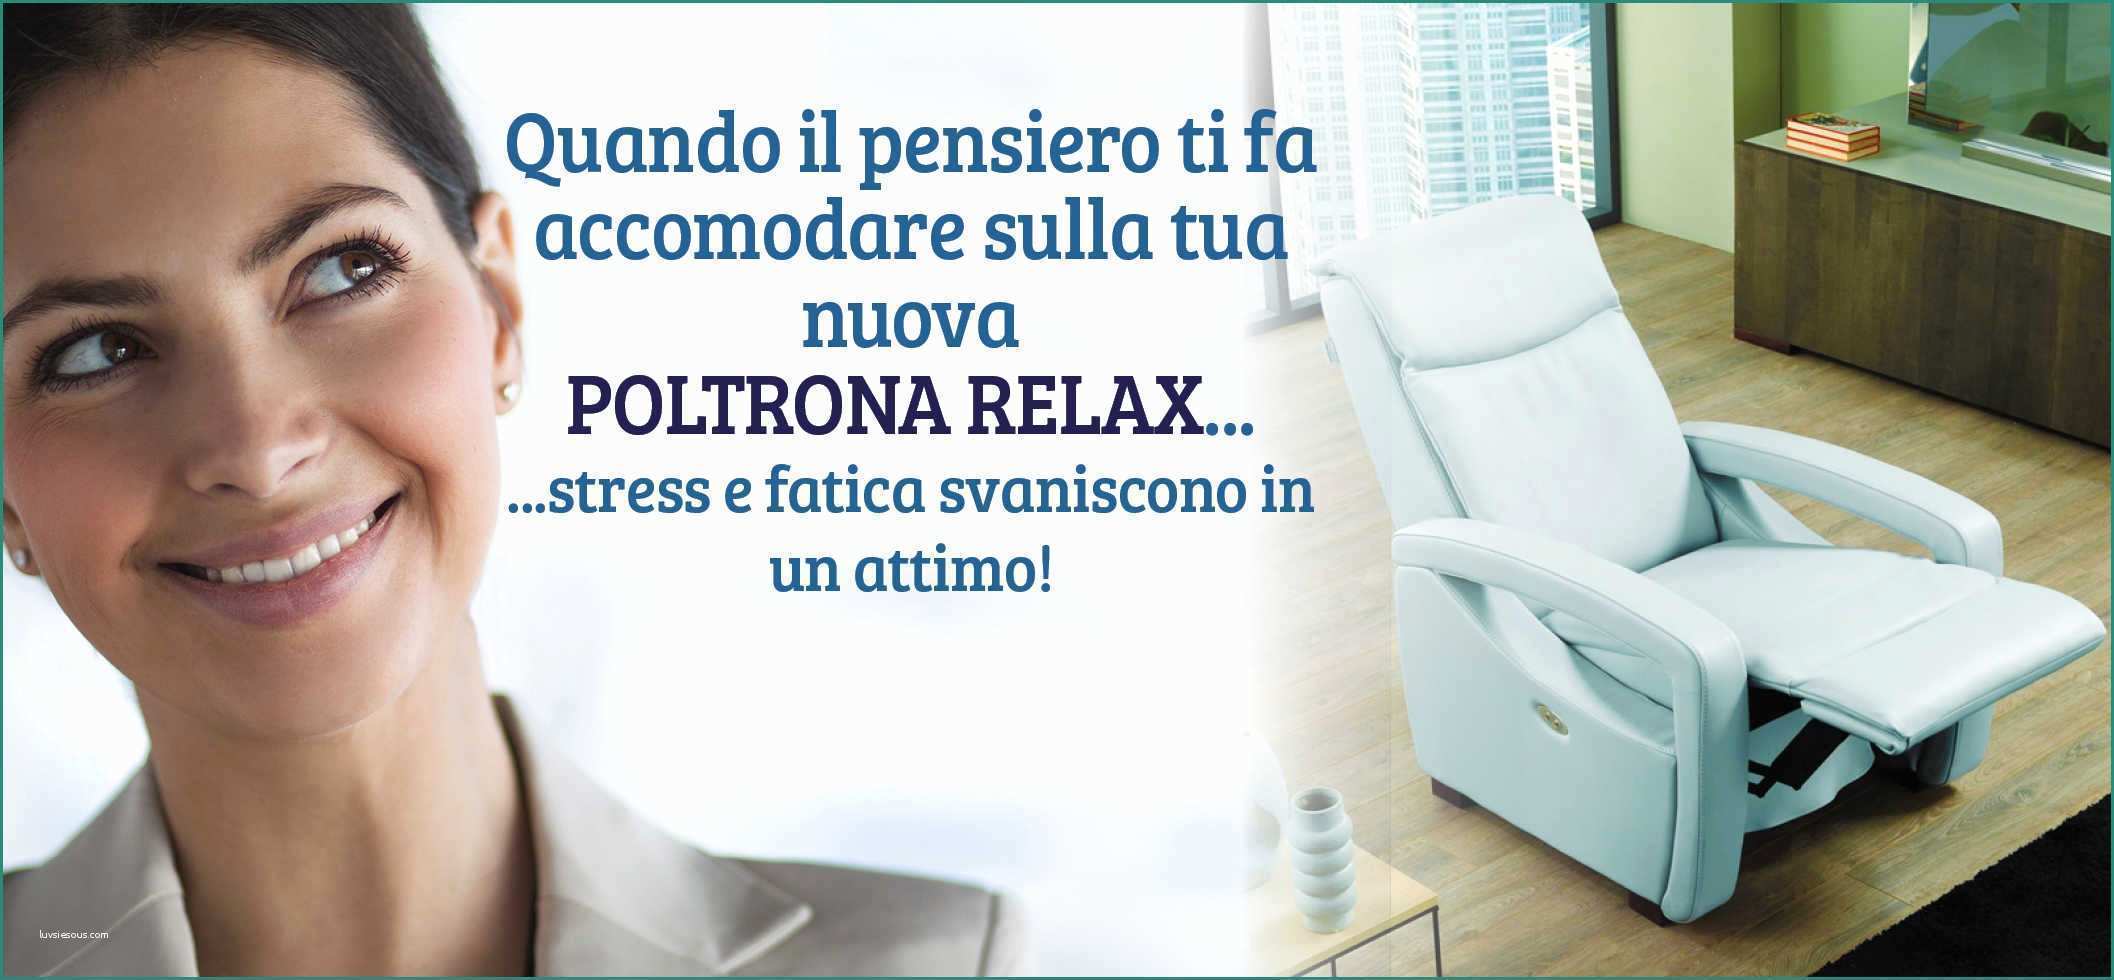 Poltrone Global Relax Prezzi E Home Page